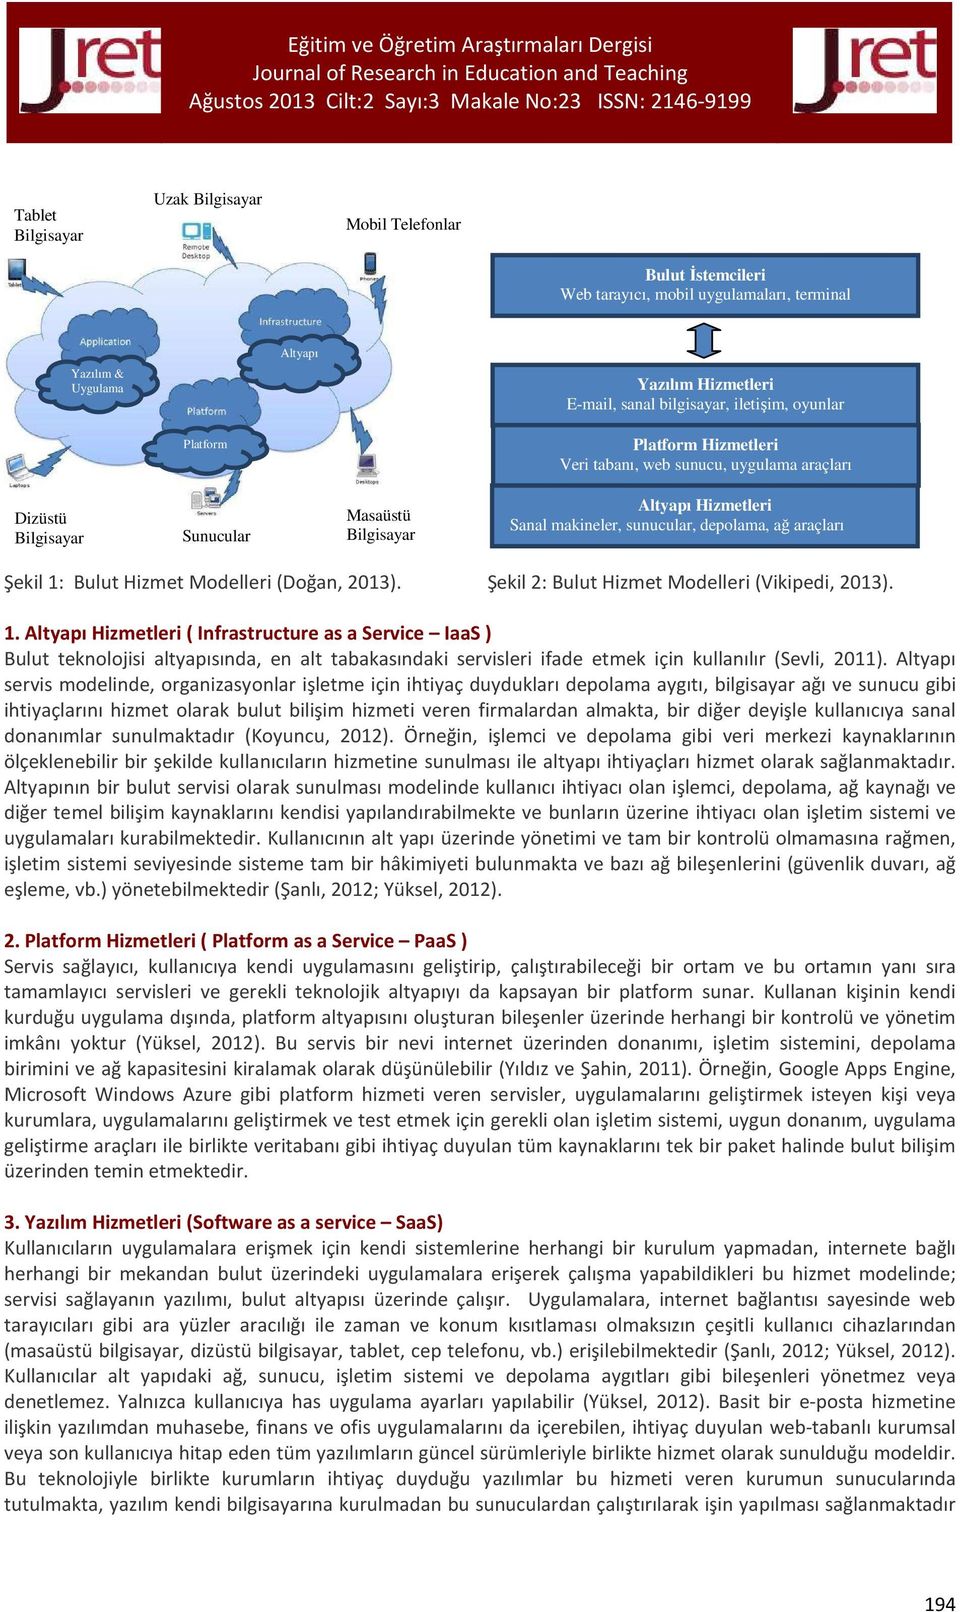 Şekil 1: Bulut Hizmet Modelleri (Doğan, 2013). Şekil 2: Bulut Hizmet Modelleri (Vikipedi, 2013). 1. Altyapı Hizmetleri ( Infrastructure as a Service IaaS ) Bulut teknolojisi altyapısında, en alt tabakasındaki servisleri ifade etmek için kullanılır (Sevli, 2011).